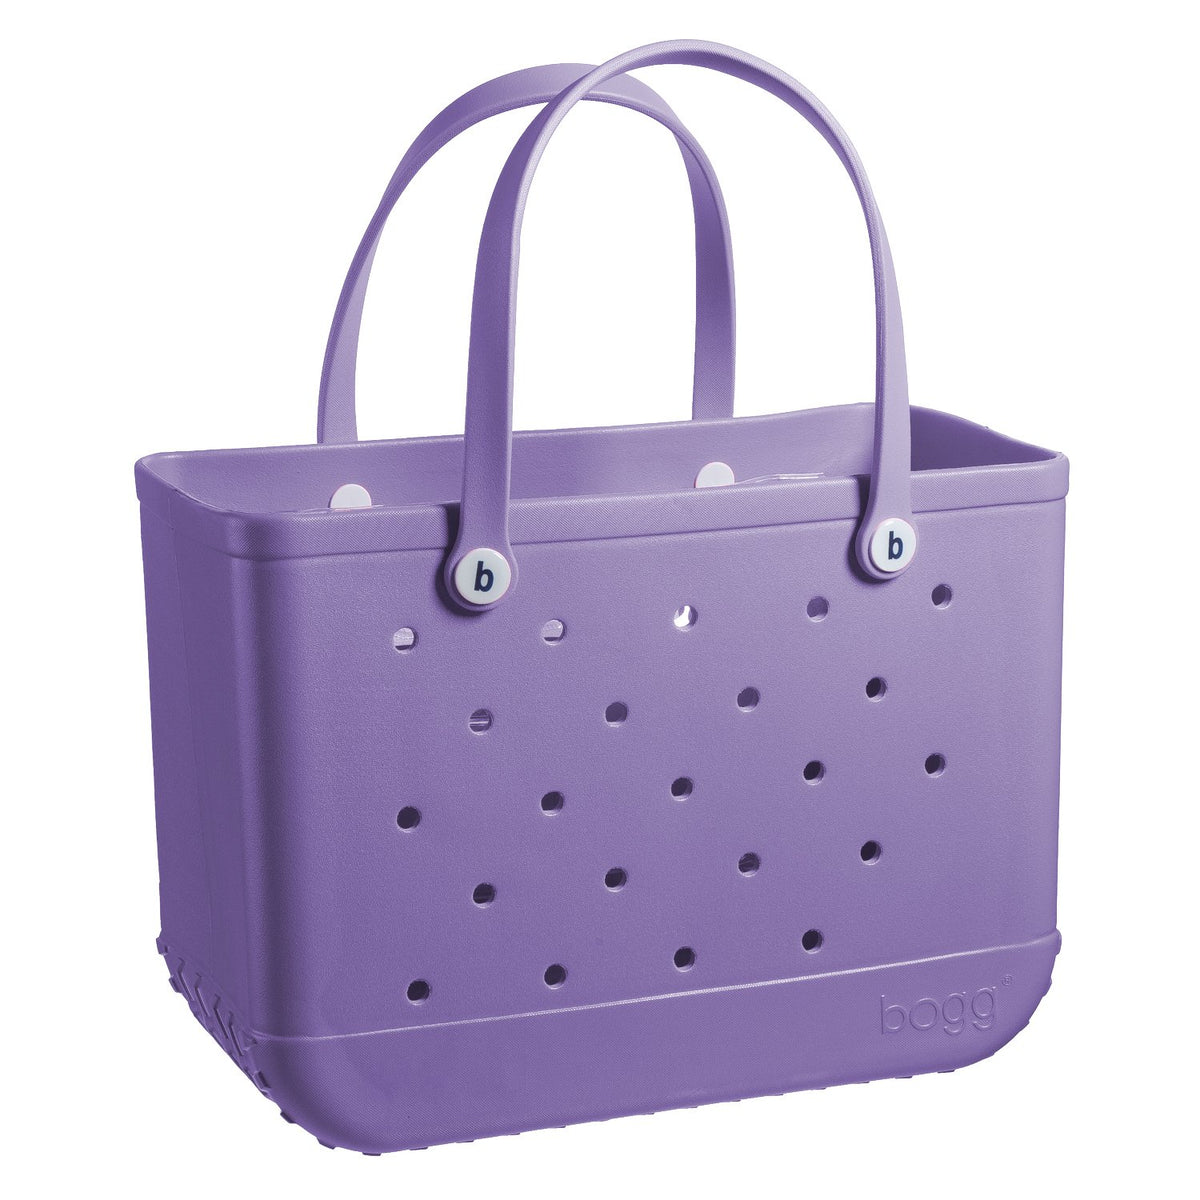 Original Bogg Bag in Lilac